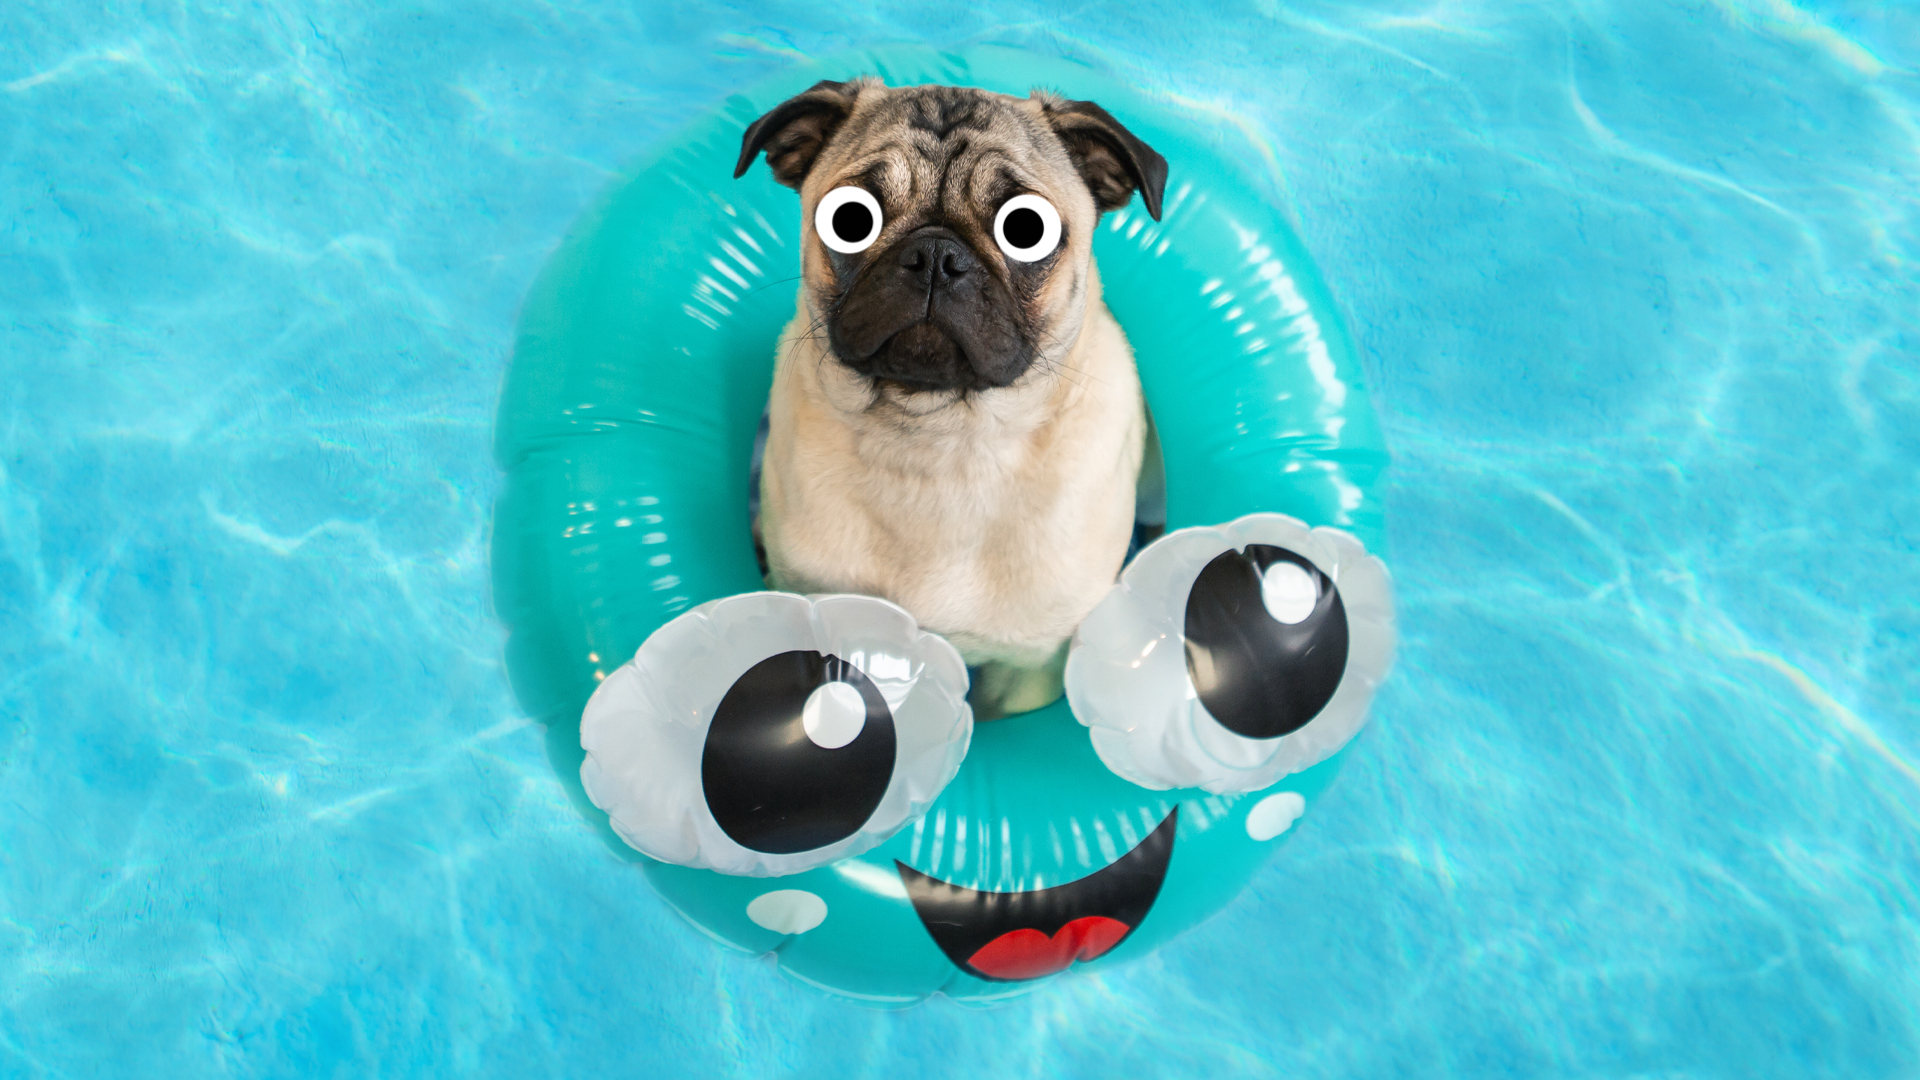 A pug in a pool